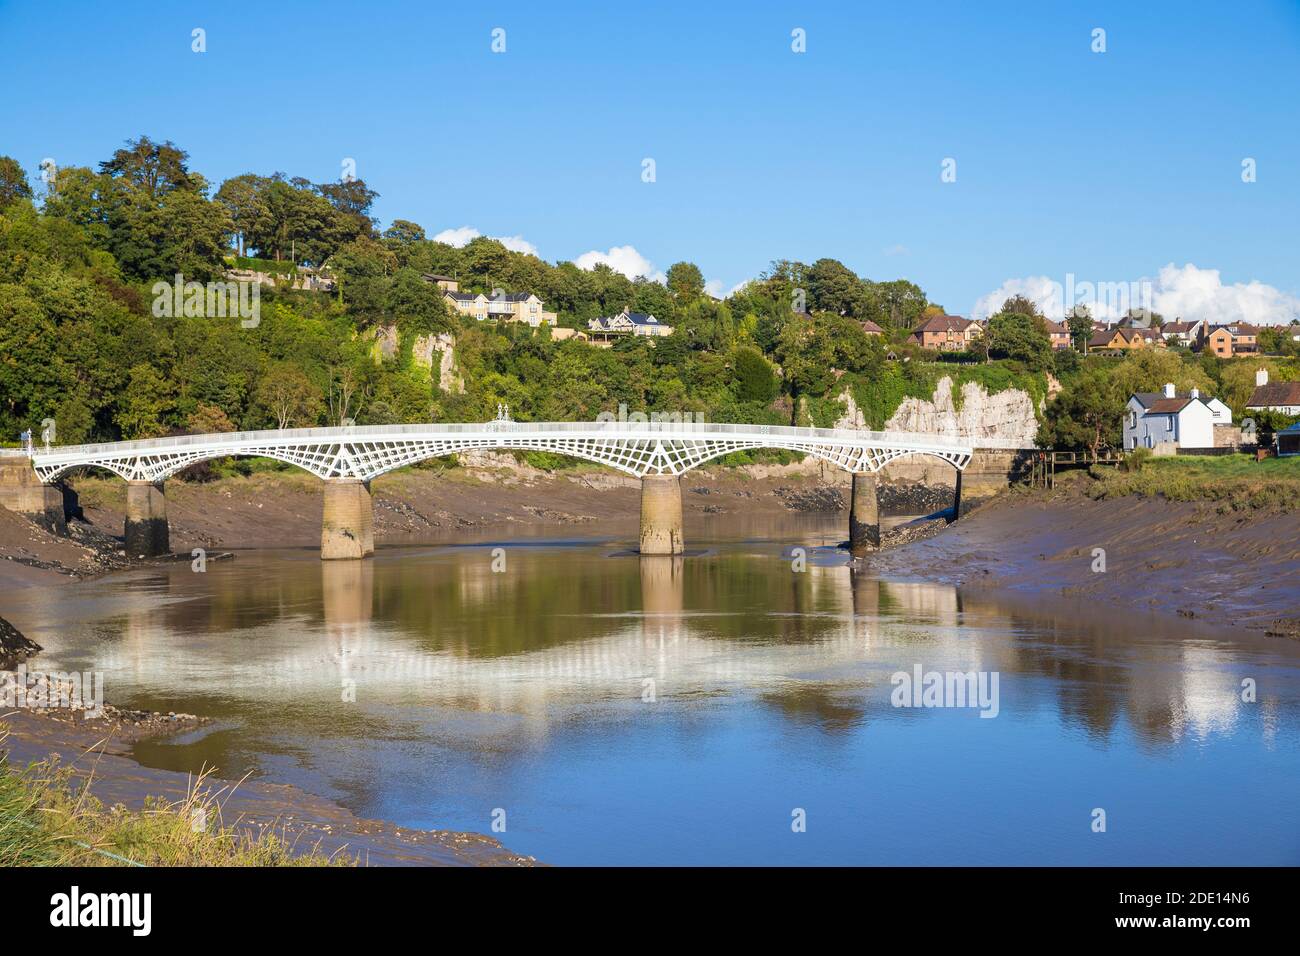 Puente sobre el río Wye, cruce fronterizo de Gloucestershire, Inglaterra y Monmouthshire, Chepstow, Monmouthshire, Gales, Reino Unido, Europa Foto de stock